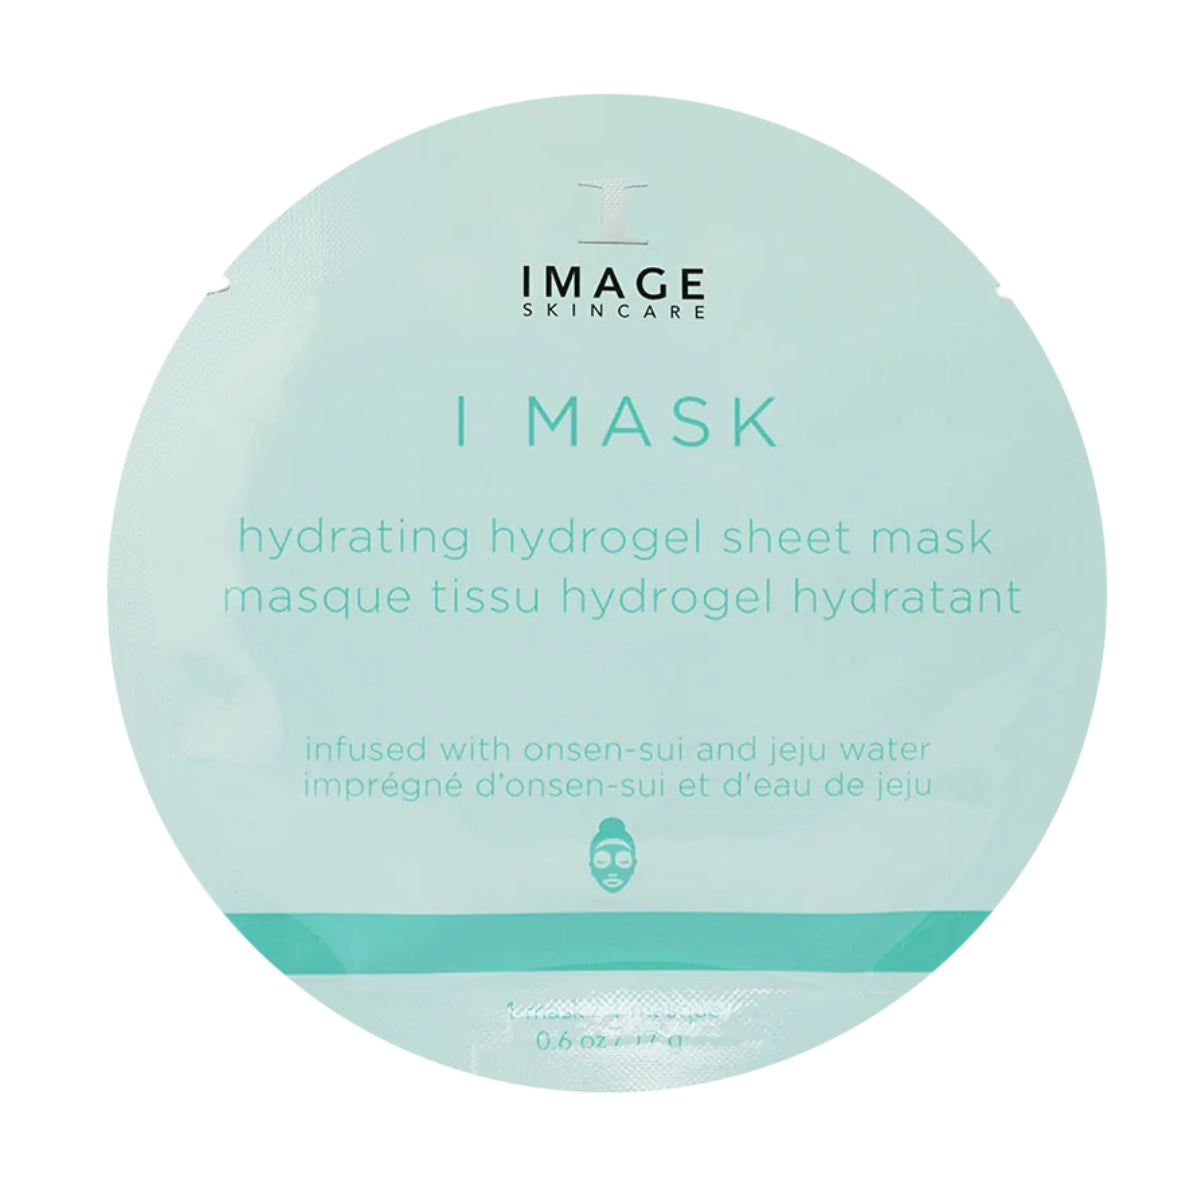 IMAGE Skincare I Mask Hydrating Hydrogel Sheet Mask Single Sheet Mask